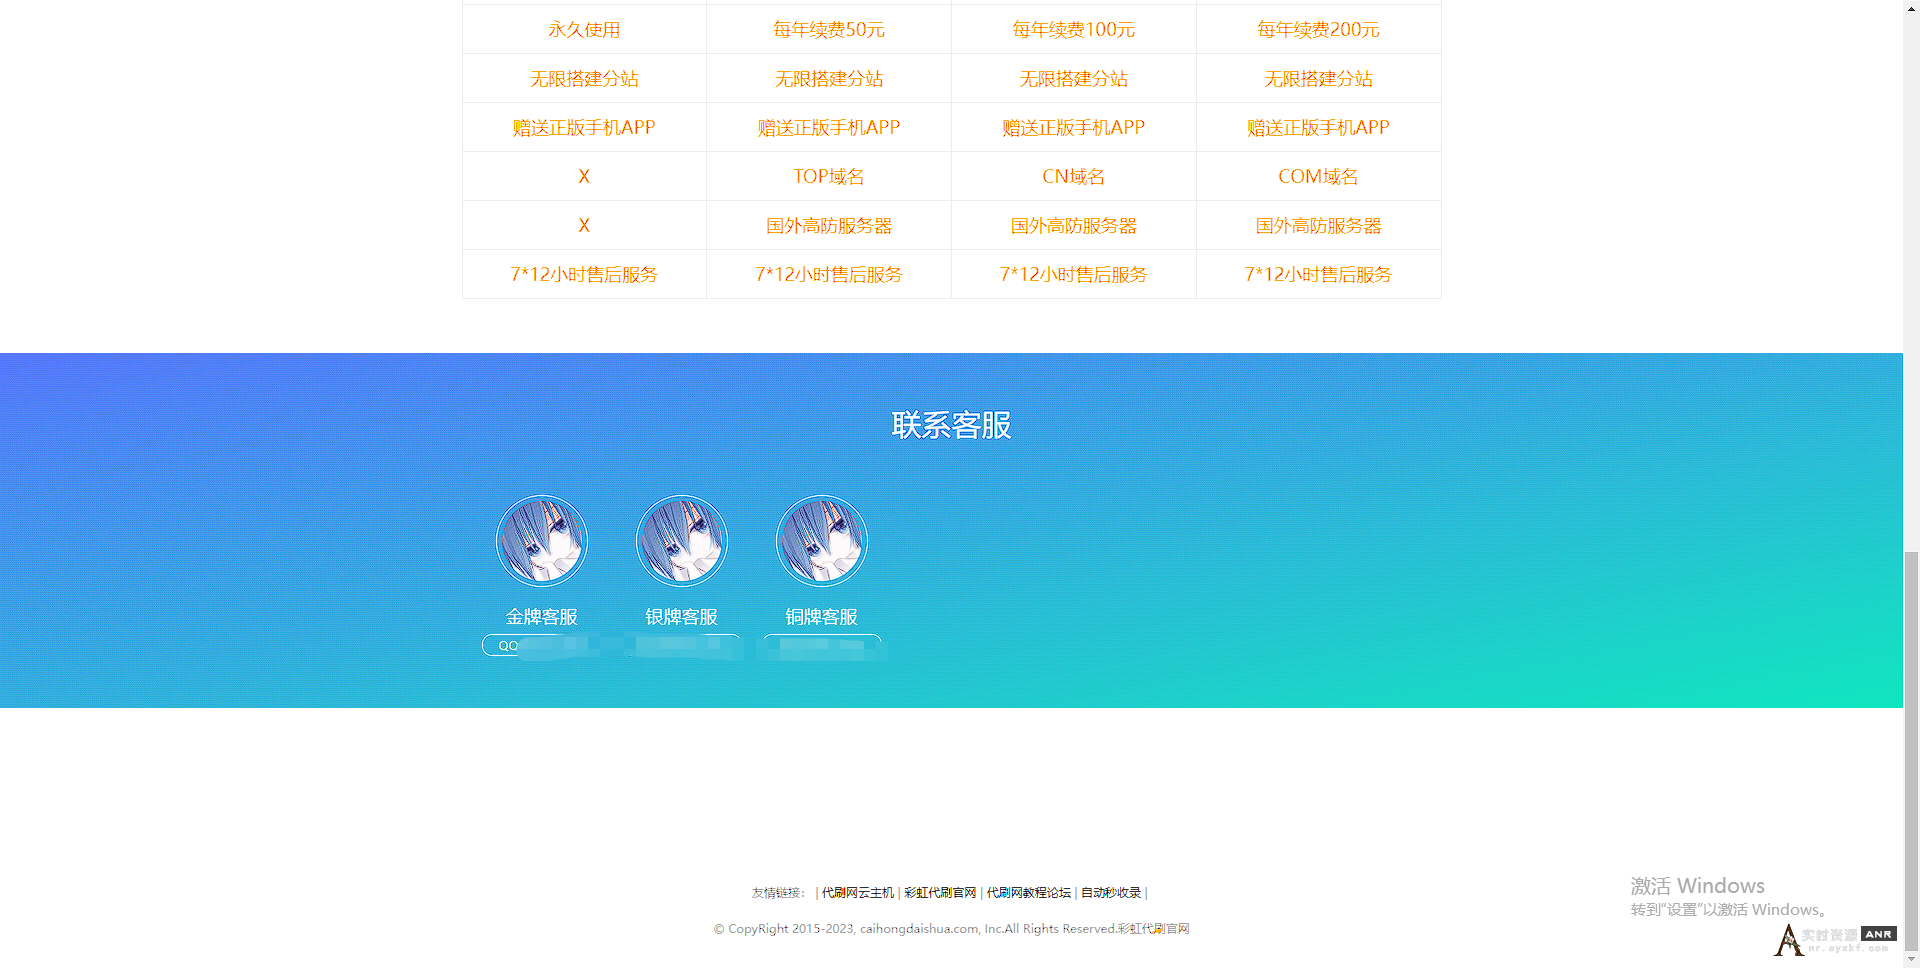 彩虹dai刷系统官网源码-彩虹系统官网模板 网络资源 图2张